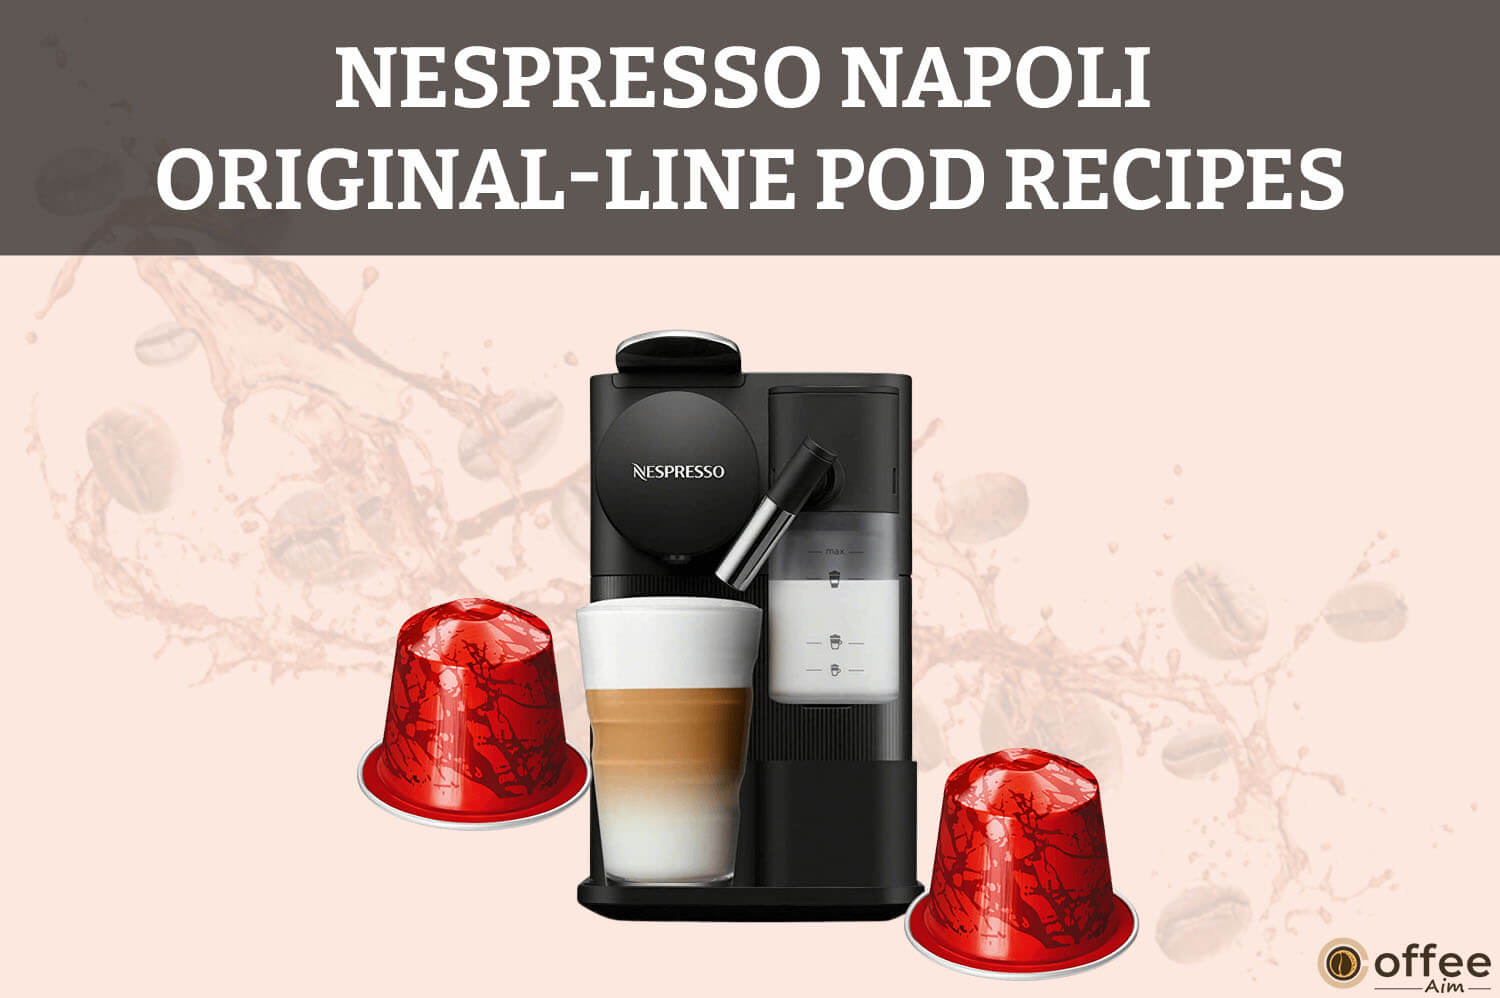 Featured image for the article "Nespresso Napoli OriginalLine Pod Recipes"